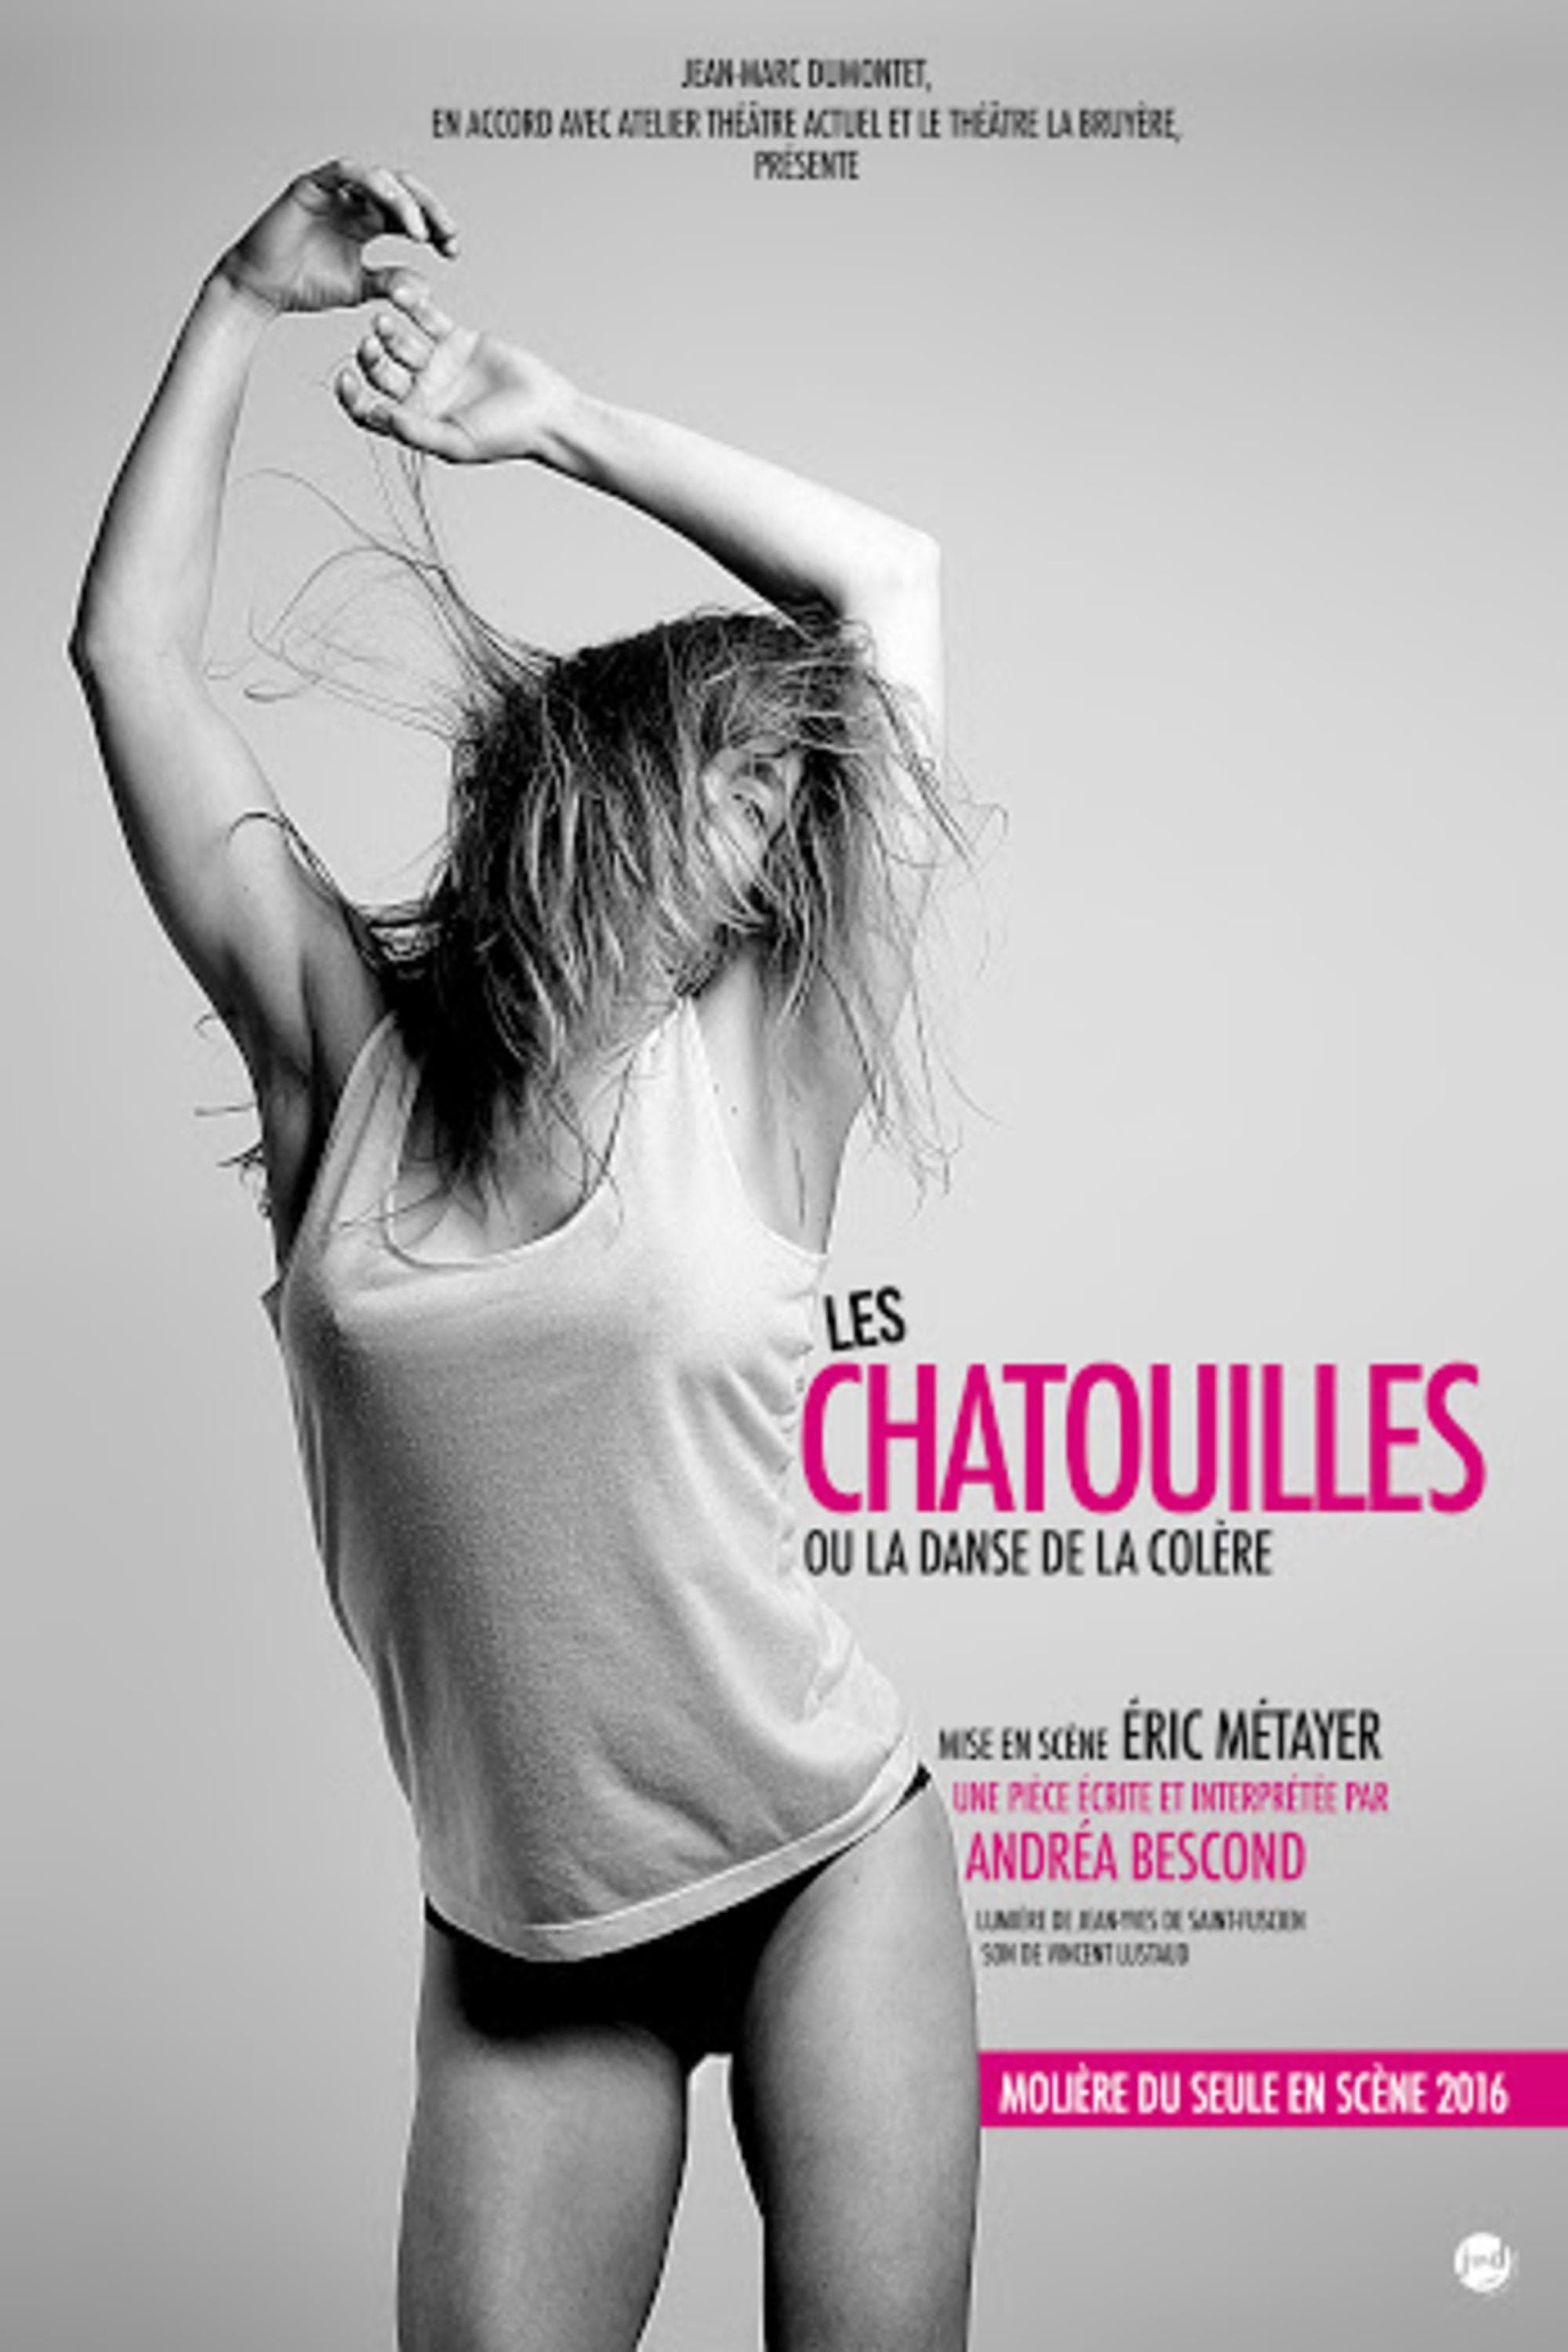 Andréa Bescond - Les Chatouilles ou La Danse de la colère